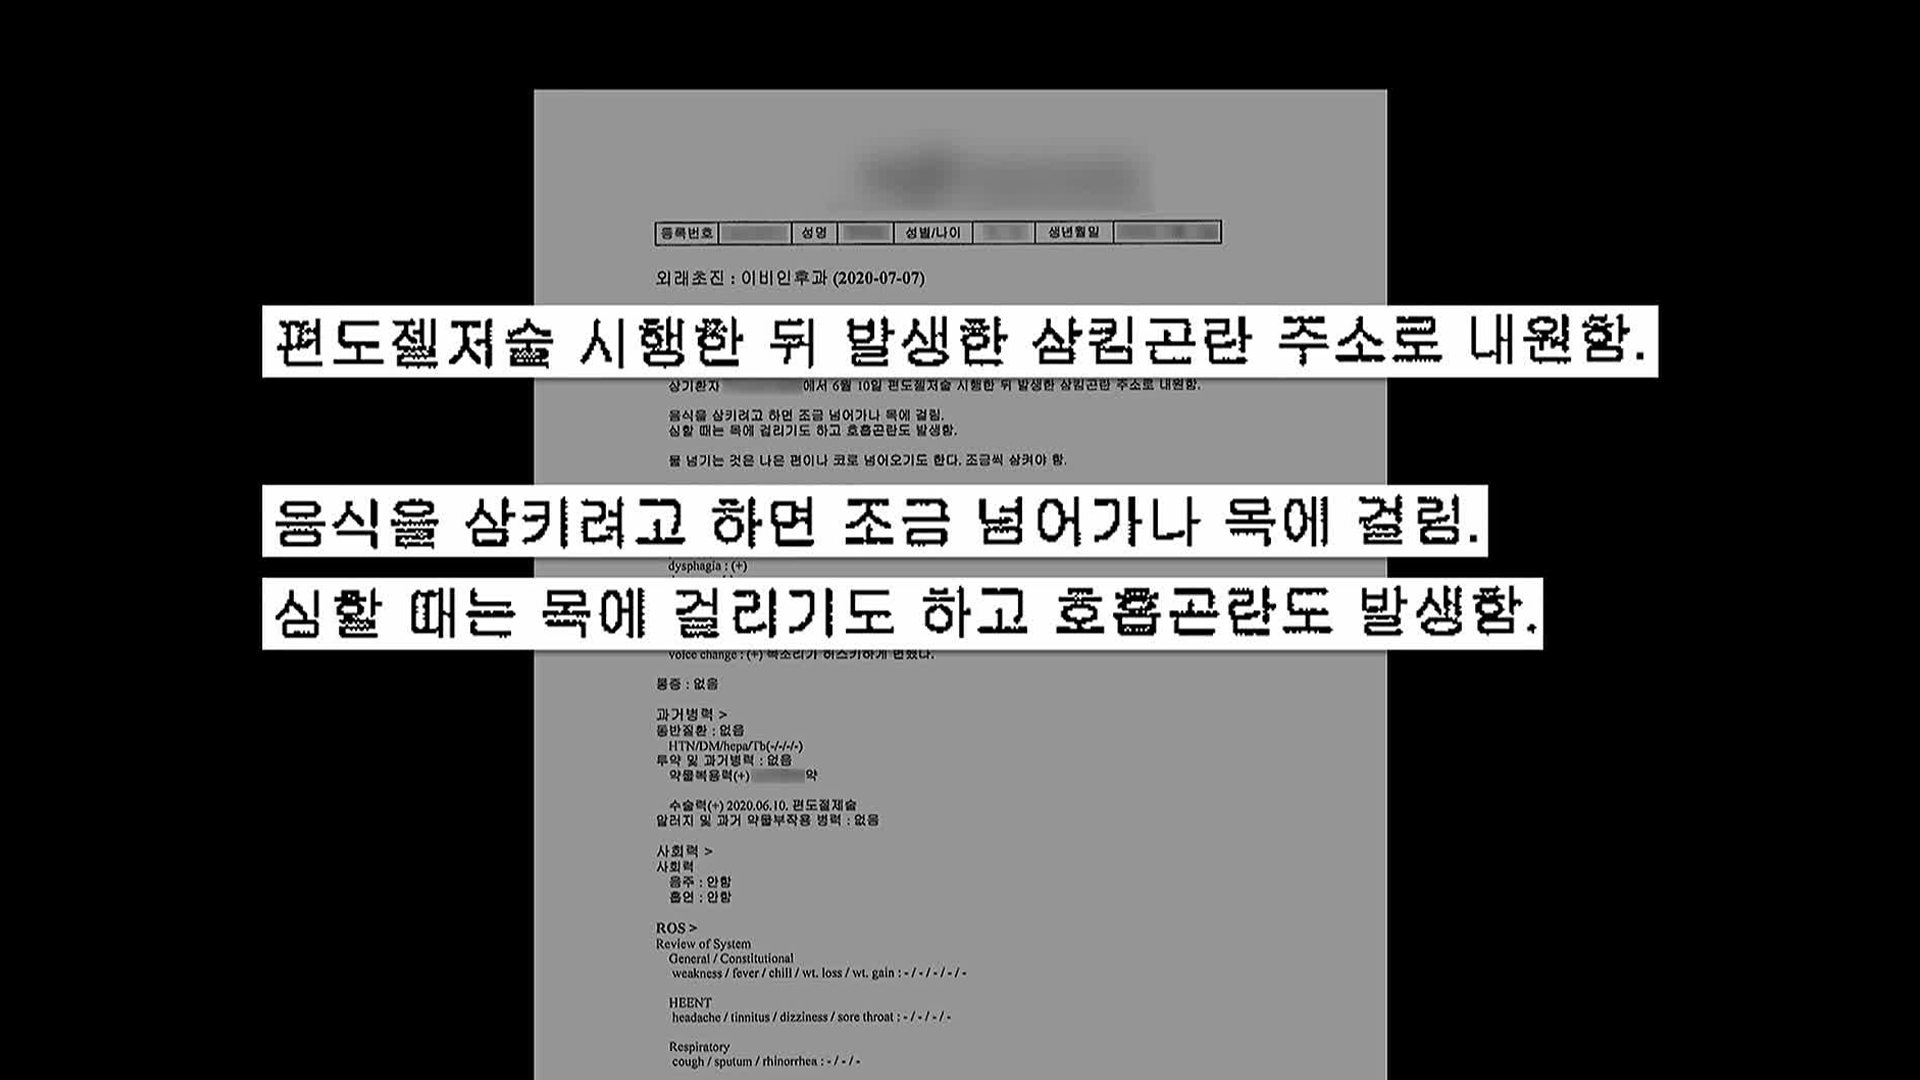 ‘5살 동희 군’ 사망사고 의사, 또 의료사고?